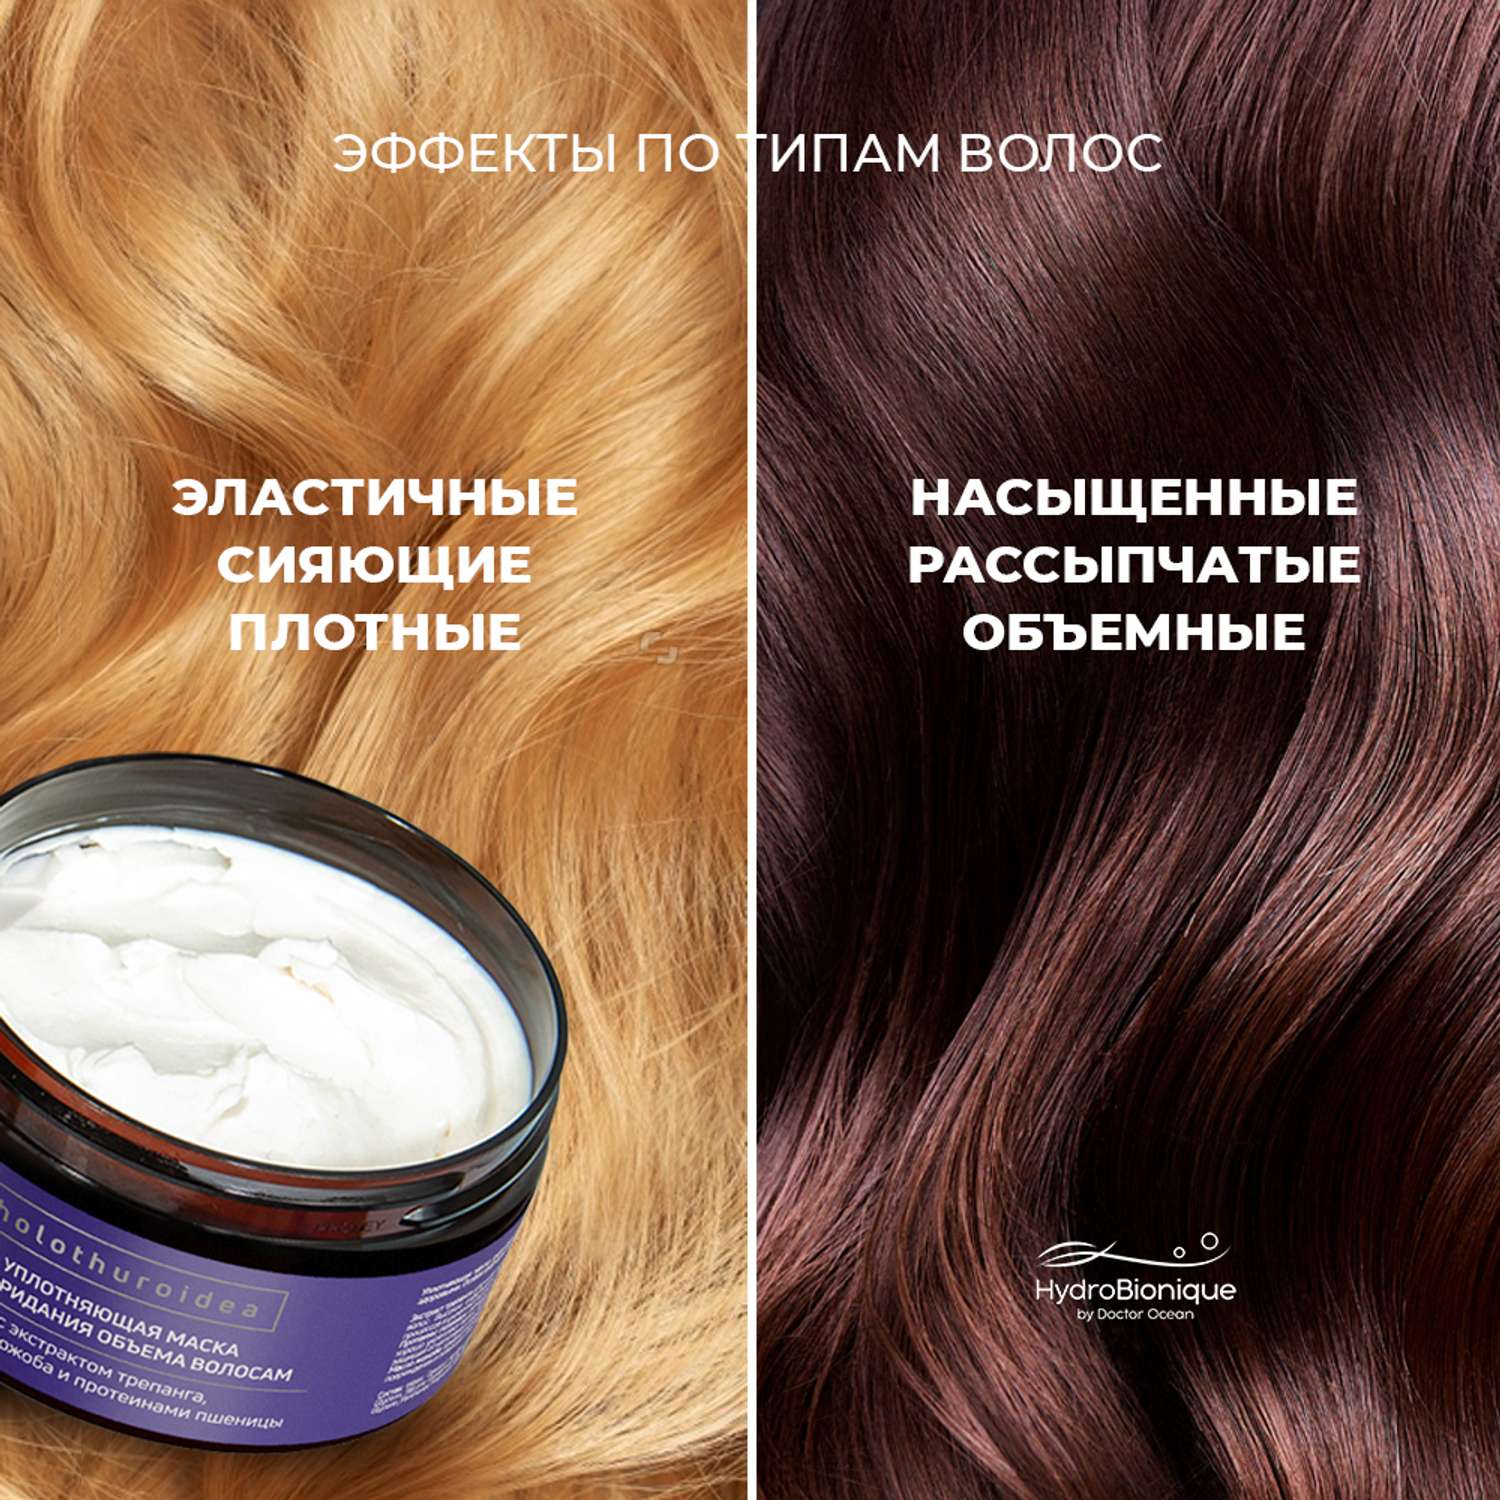 Маска для уплотнения волос. Маска для уплотнения и восстановления волос. Hydrobionique by Doctor Ocean шампунь волос фото.